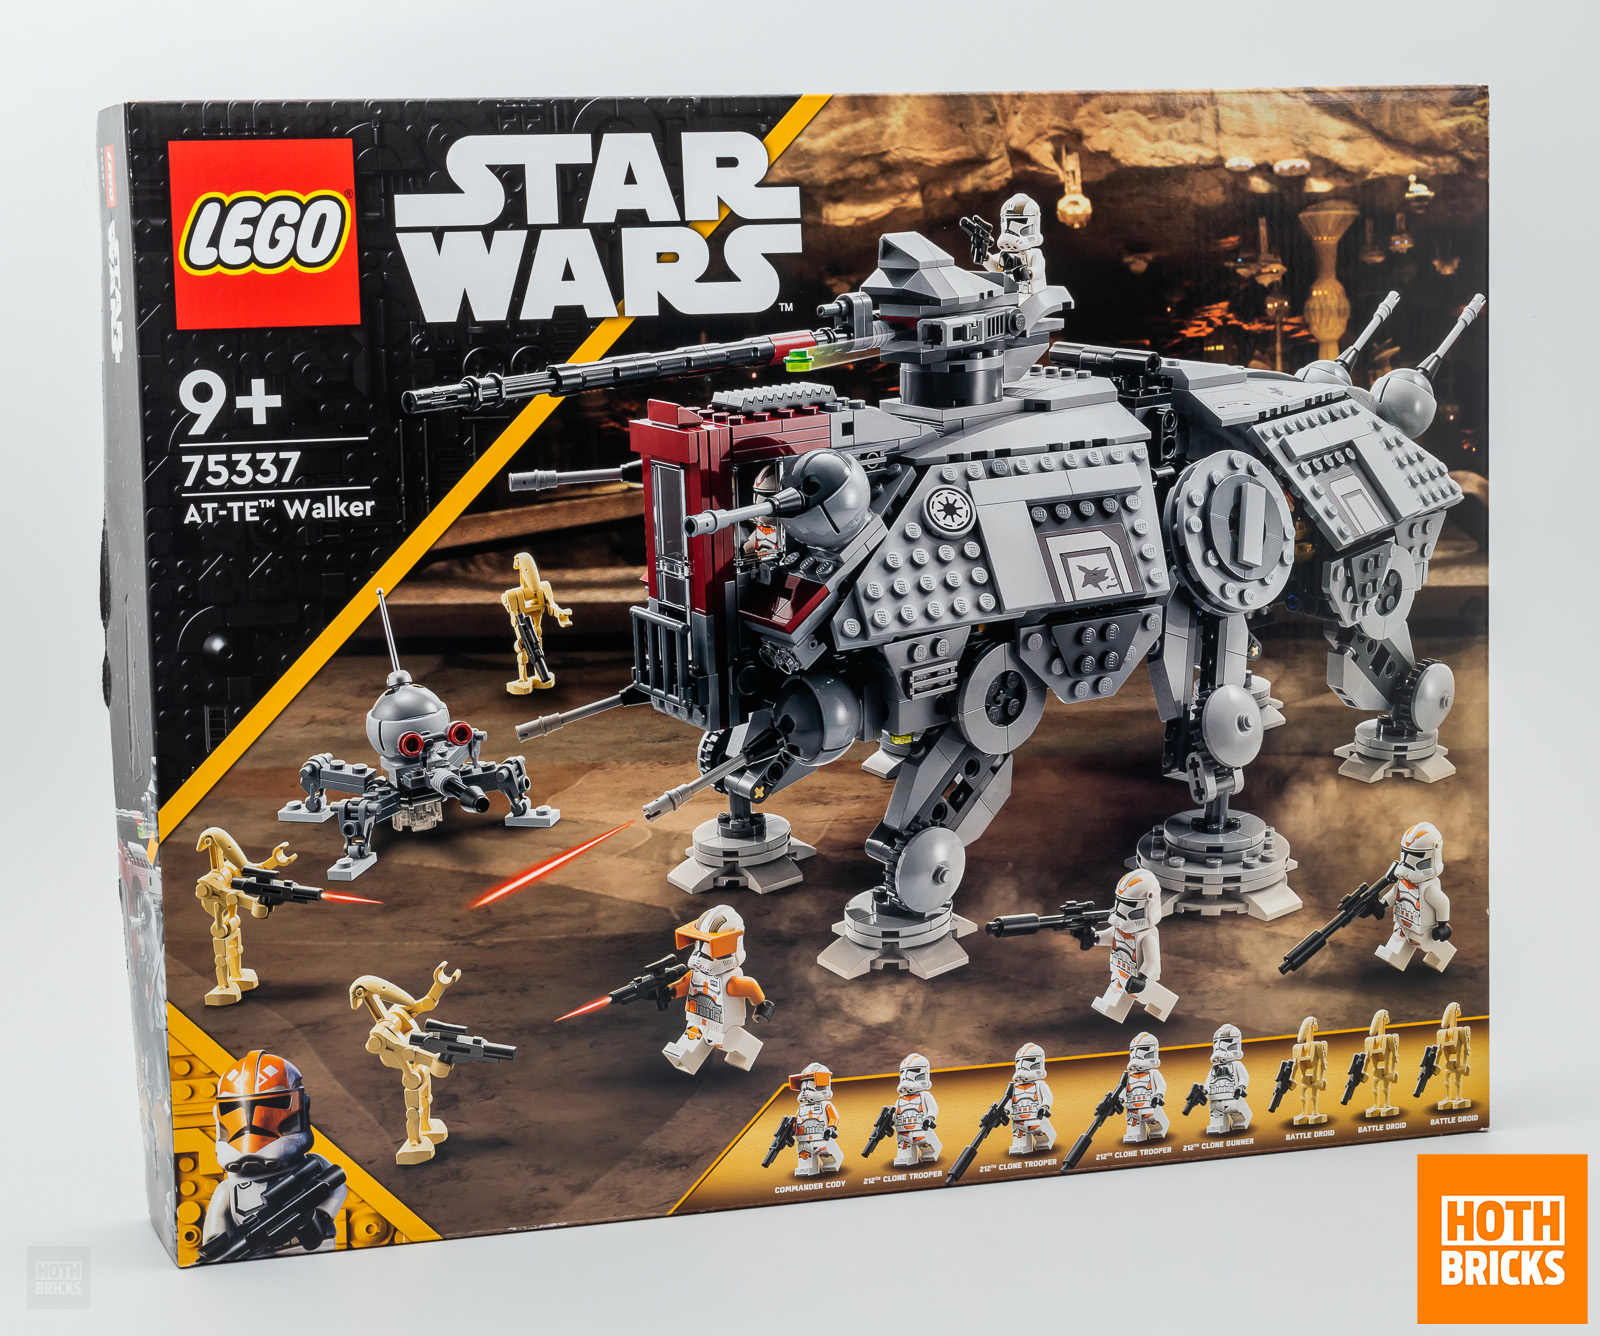 प्रतियोगिता: LEGO Star Wars 75337 AT-TE वाकर जीतने के लिए सेट की एक प्रति!